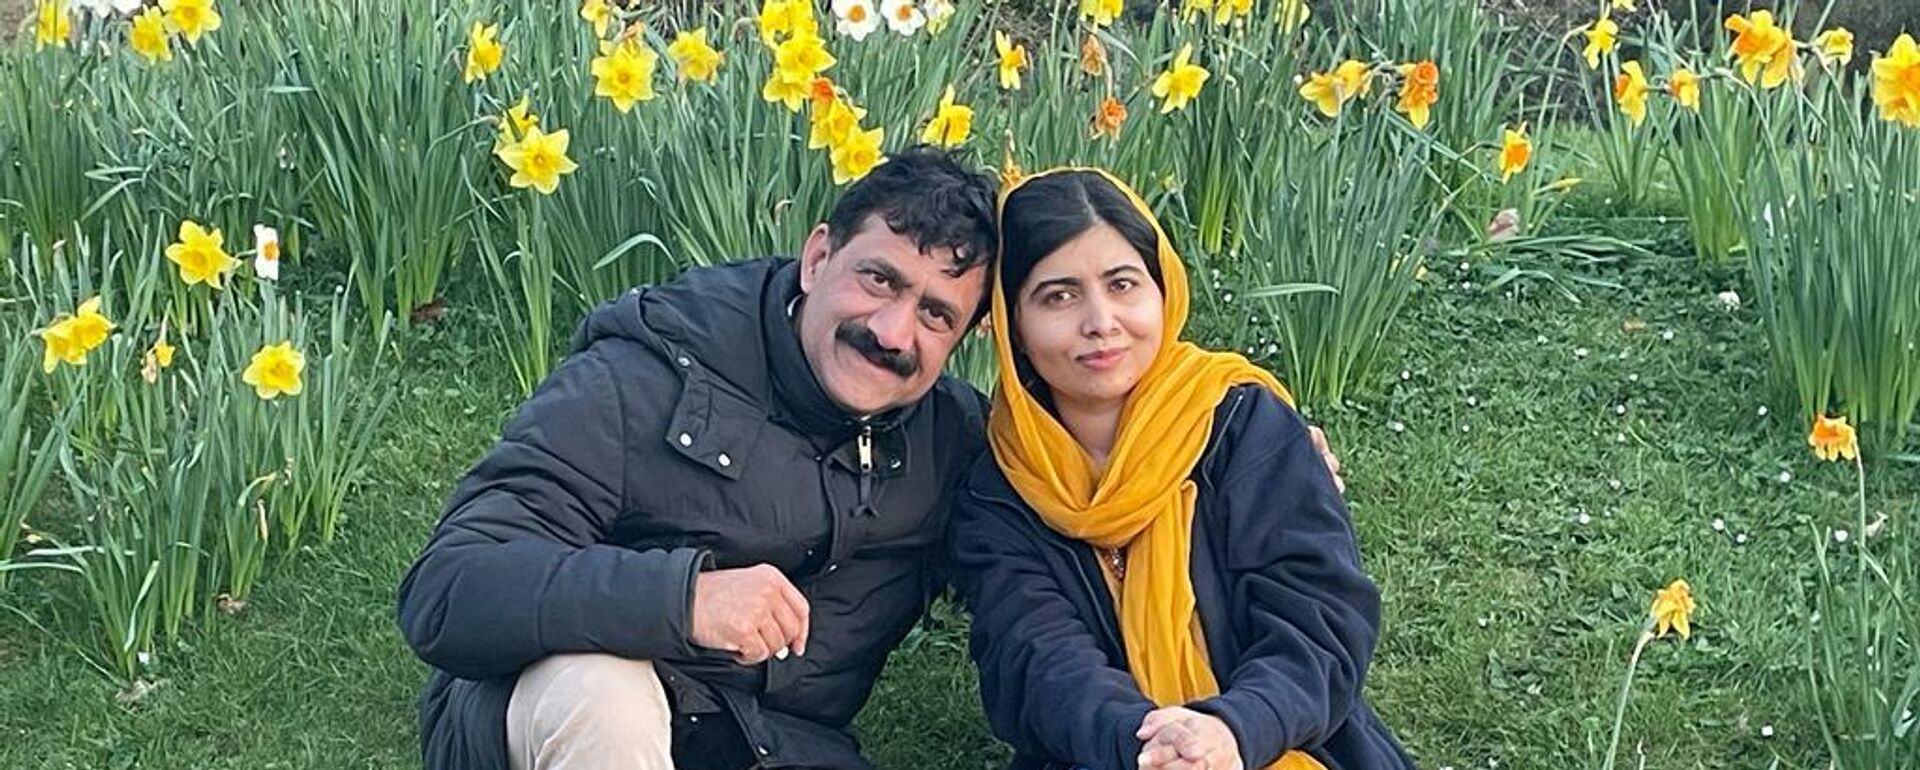 Малала Юсуфзай вместе с отцом Зияуддином Юсуфзай - Sputnik Азербайджан, 1920, 23.11.2021